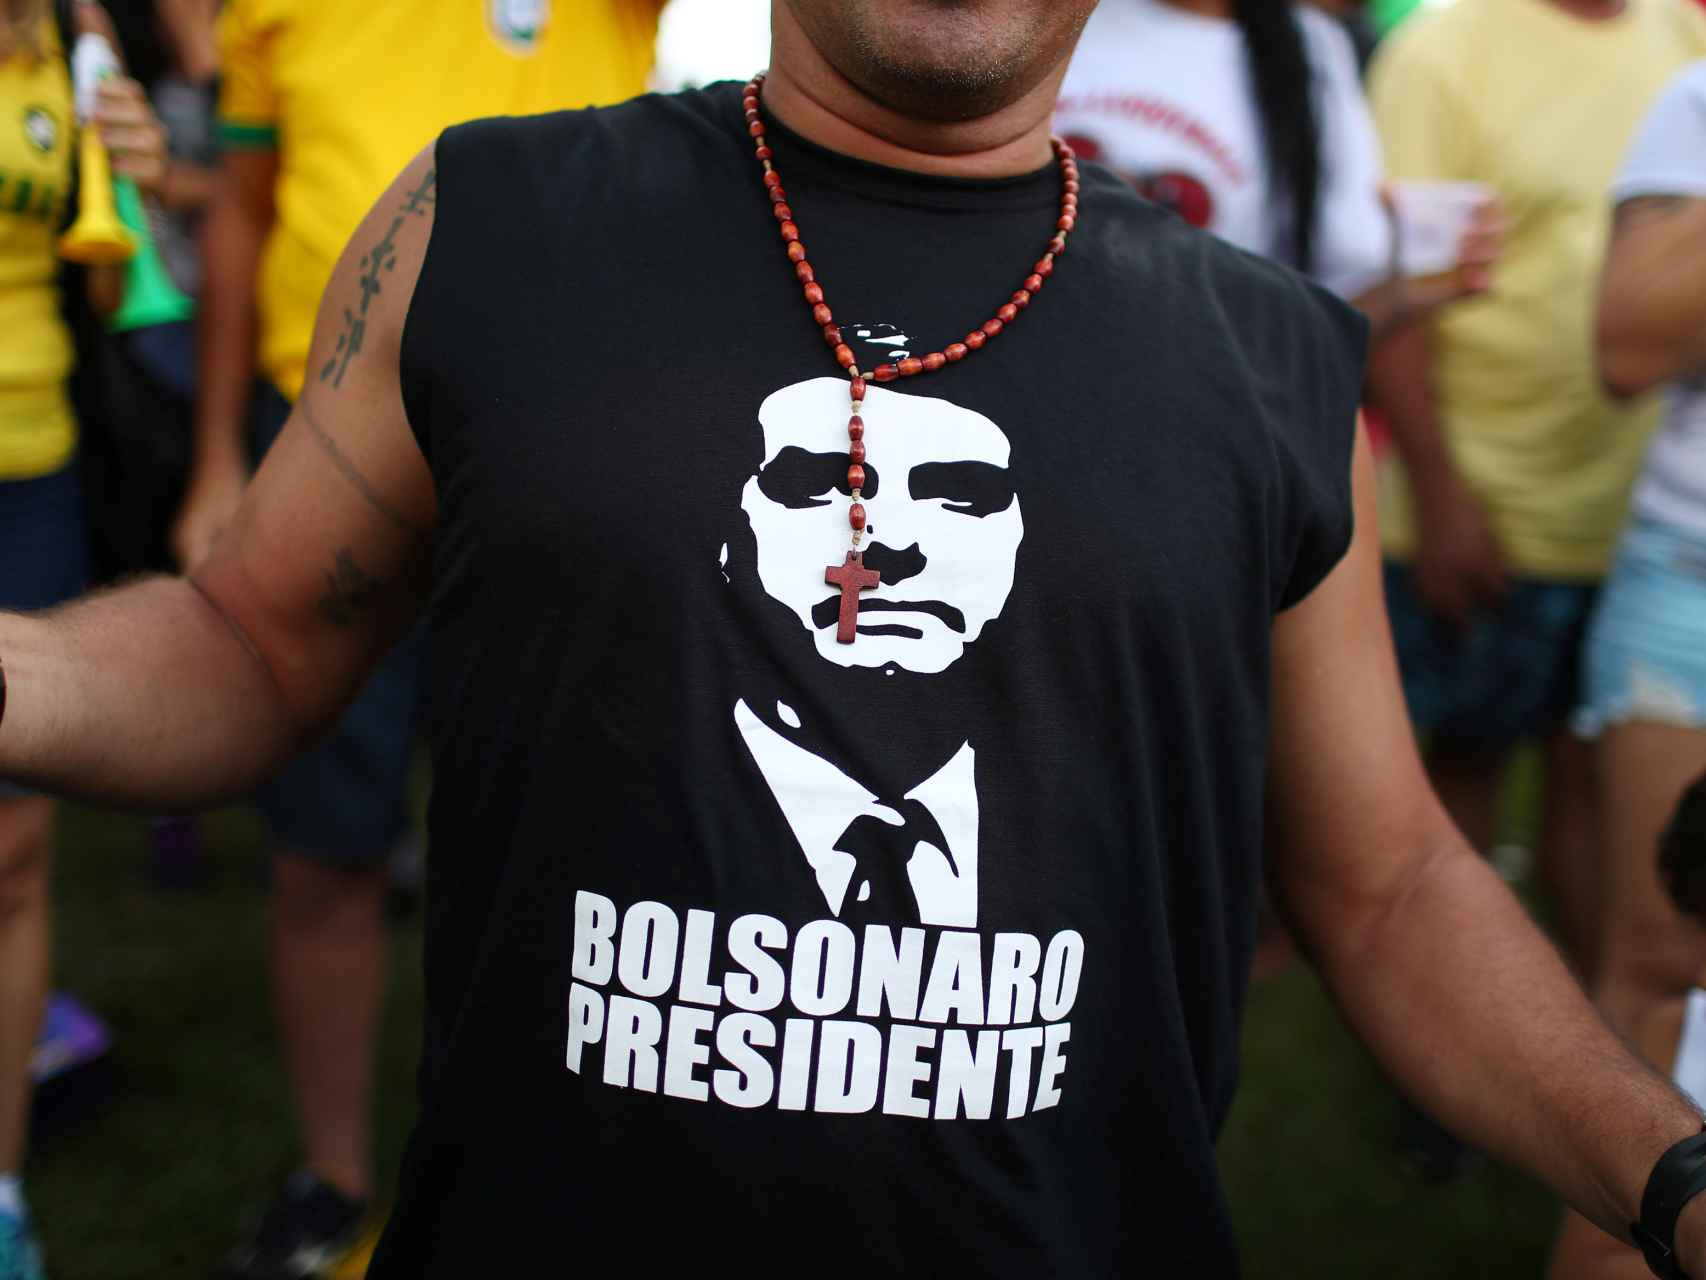 Un seguidor de Bolsonaro con una camiseta de apoyo al candidato.